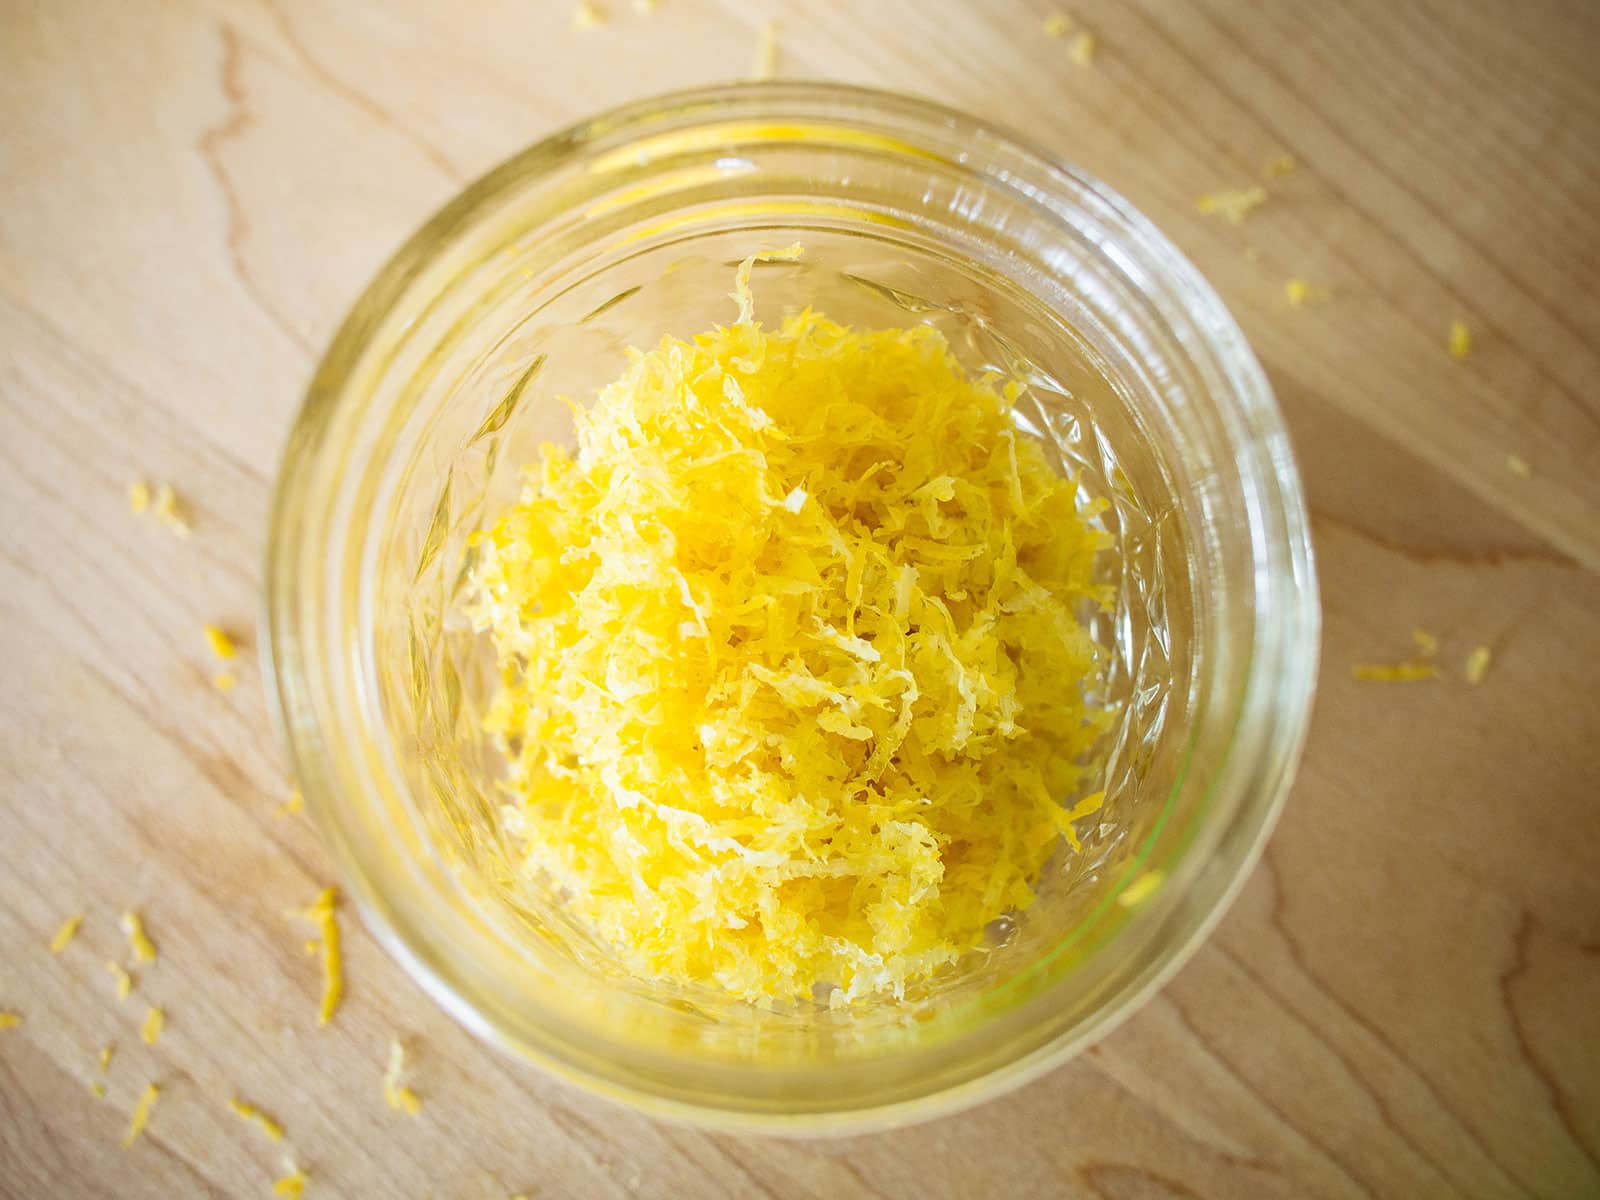 Closeup of fresh lemon zest in a glass jar shot on a wooden surface